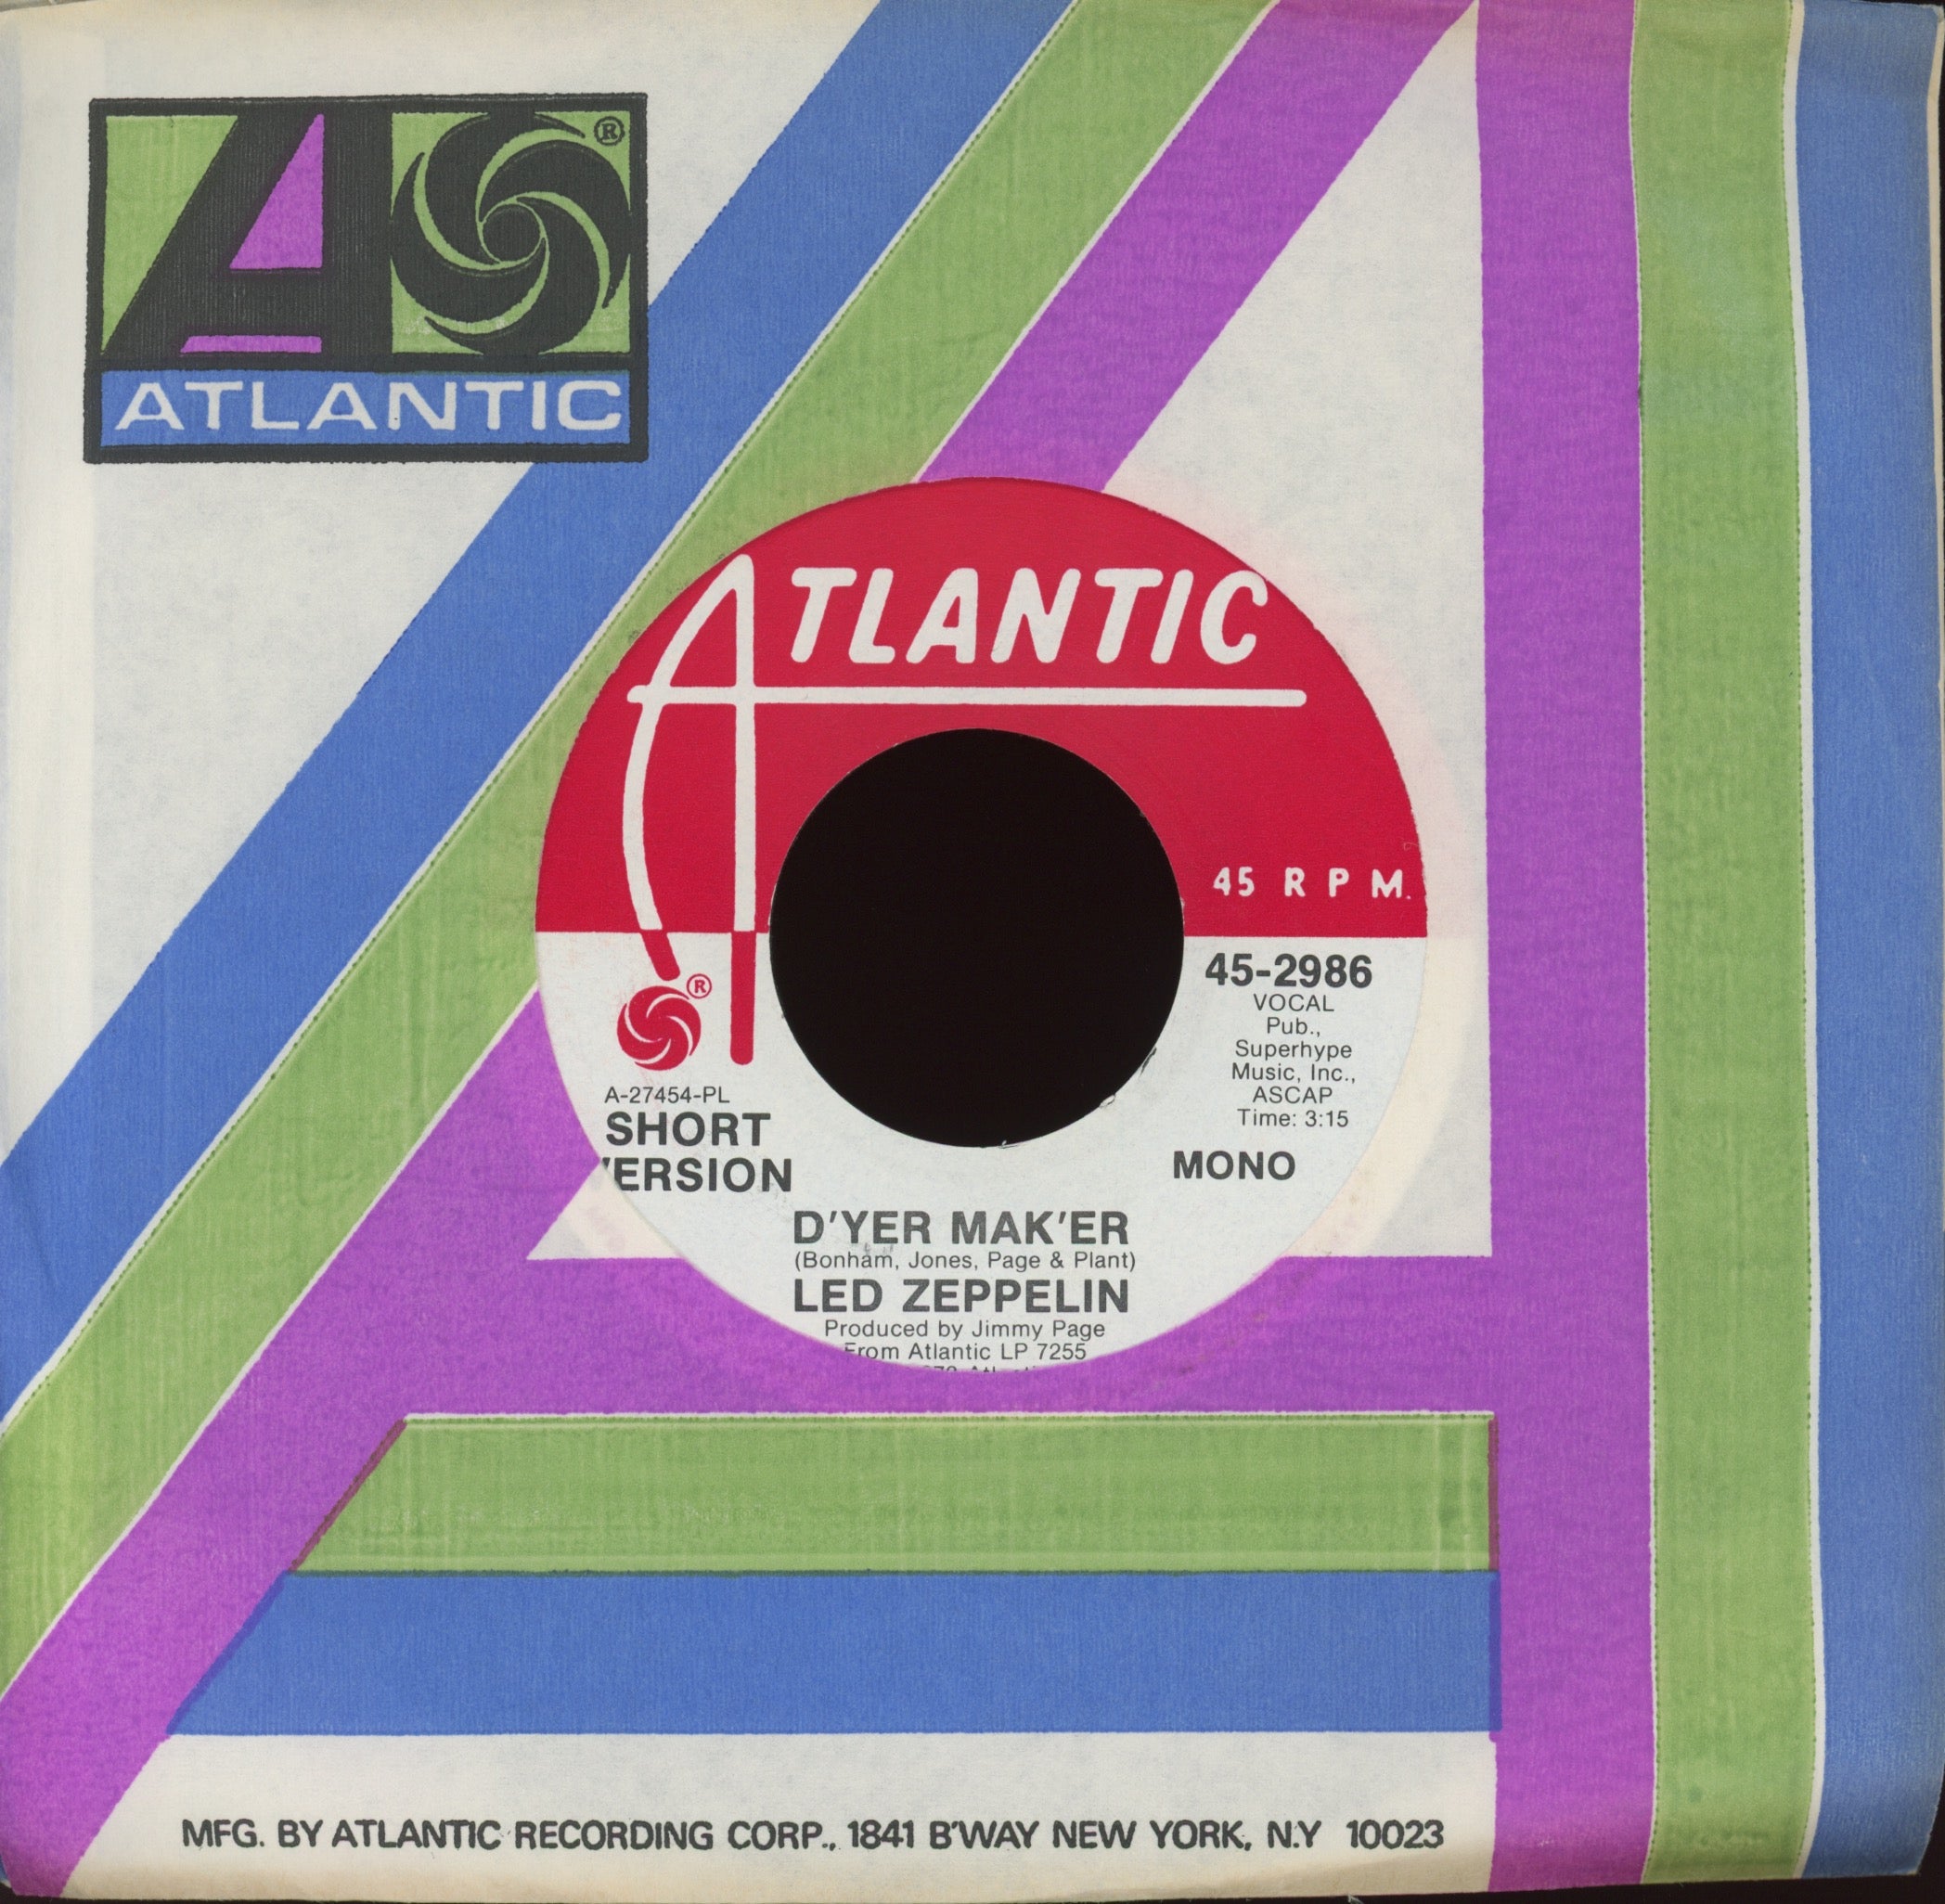 Led Zeppelin - D'yer Mak'er on Atlantic Promo